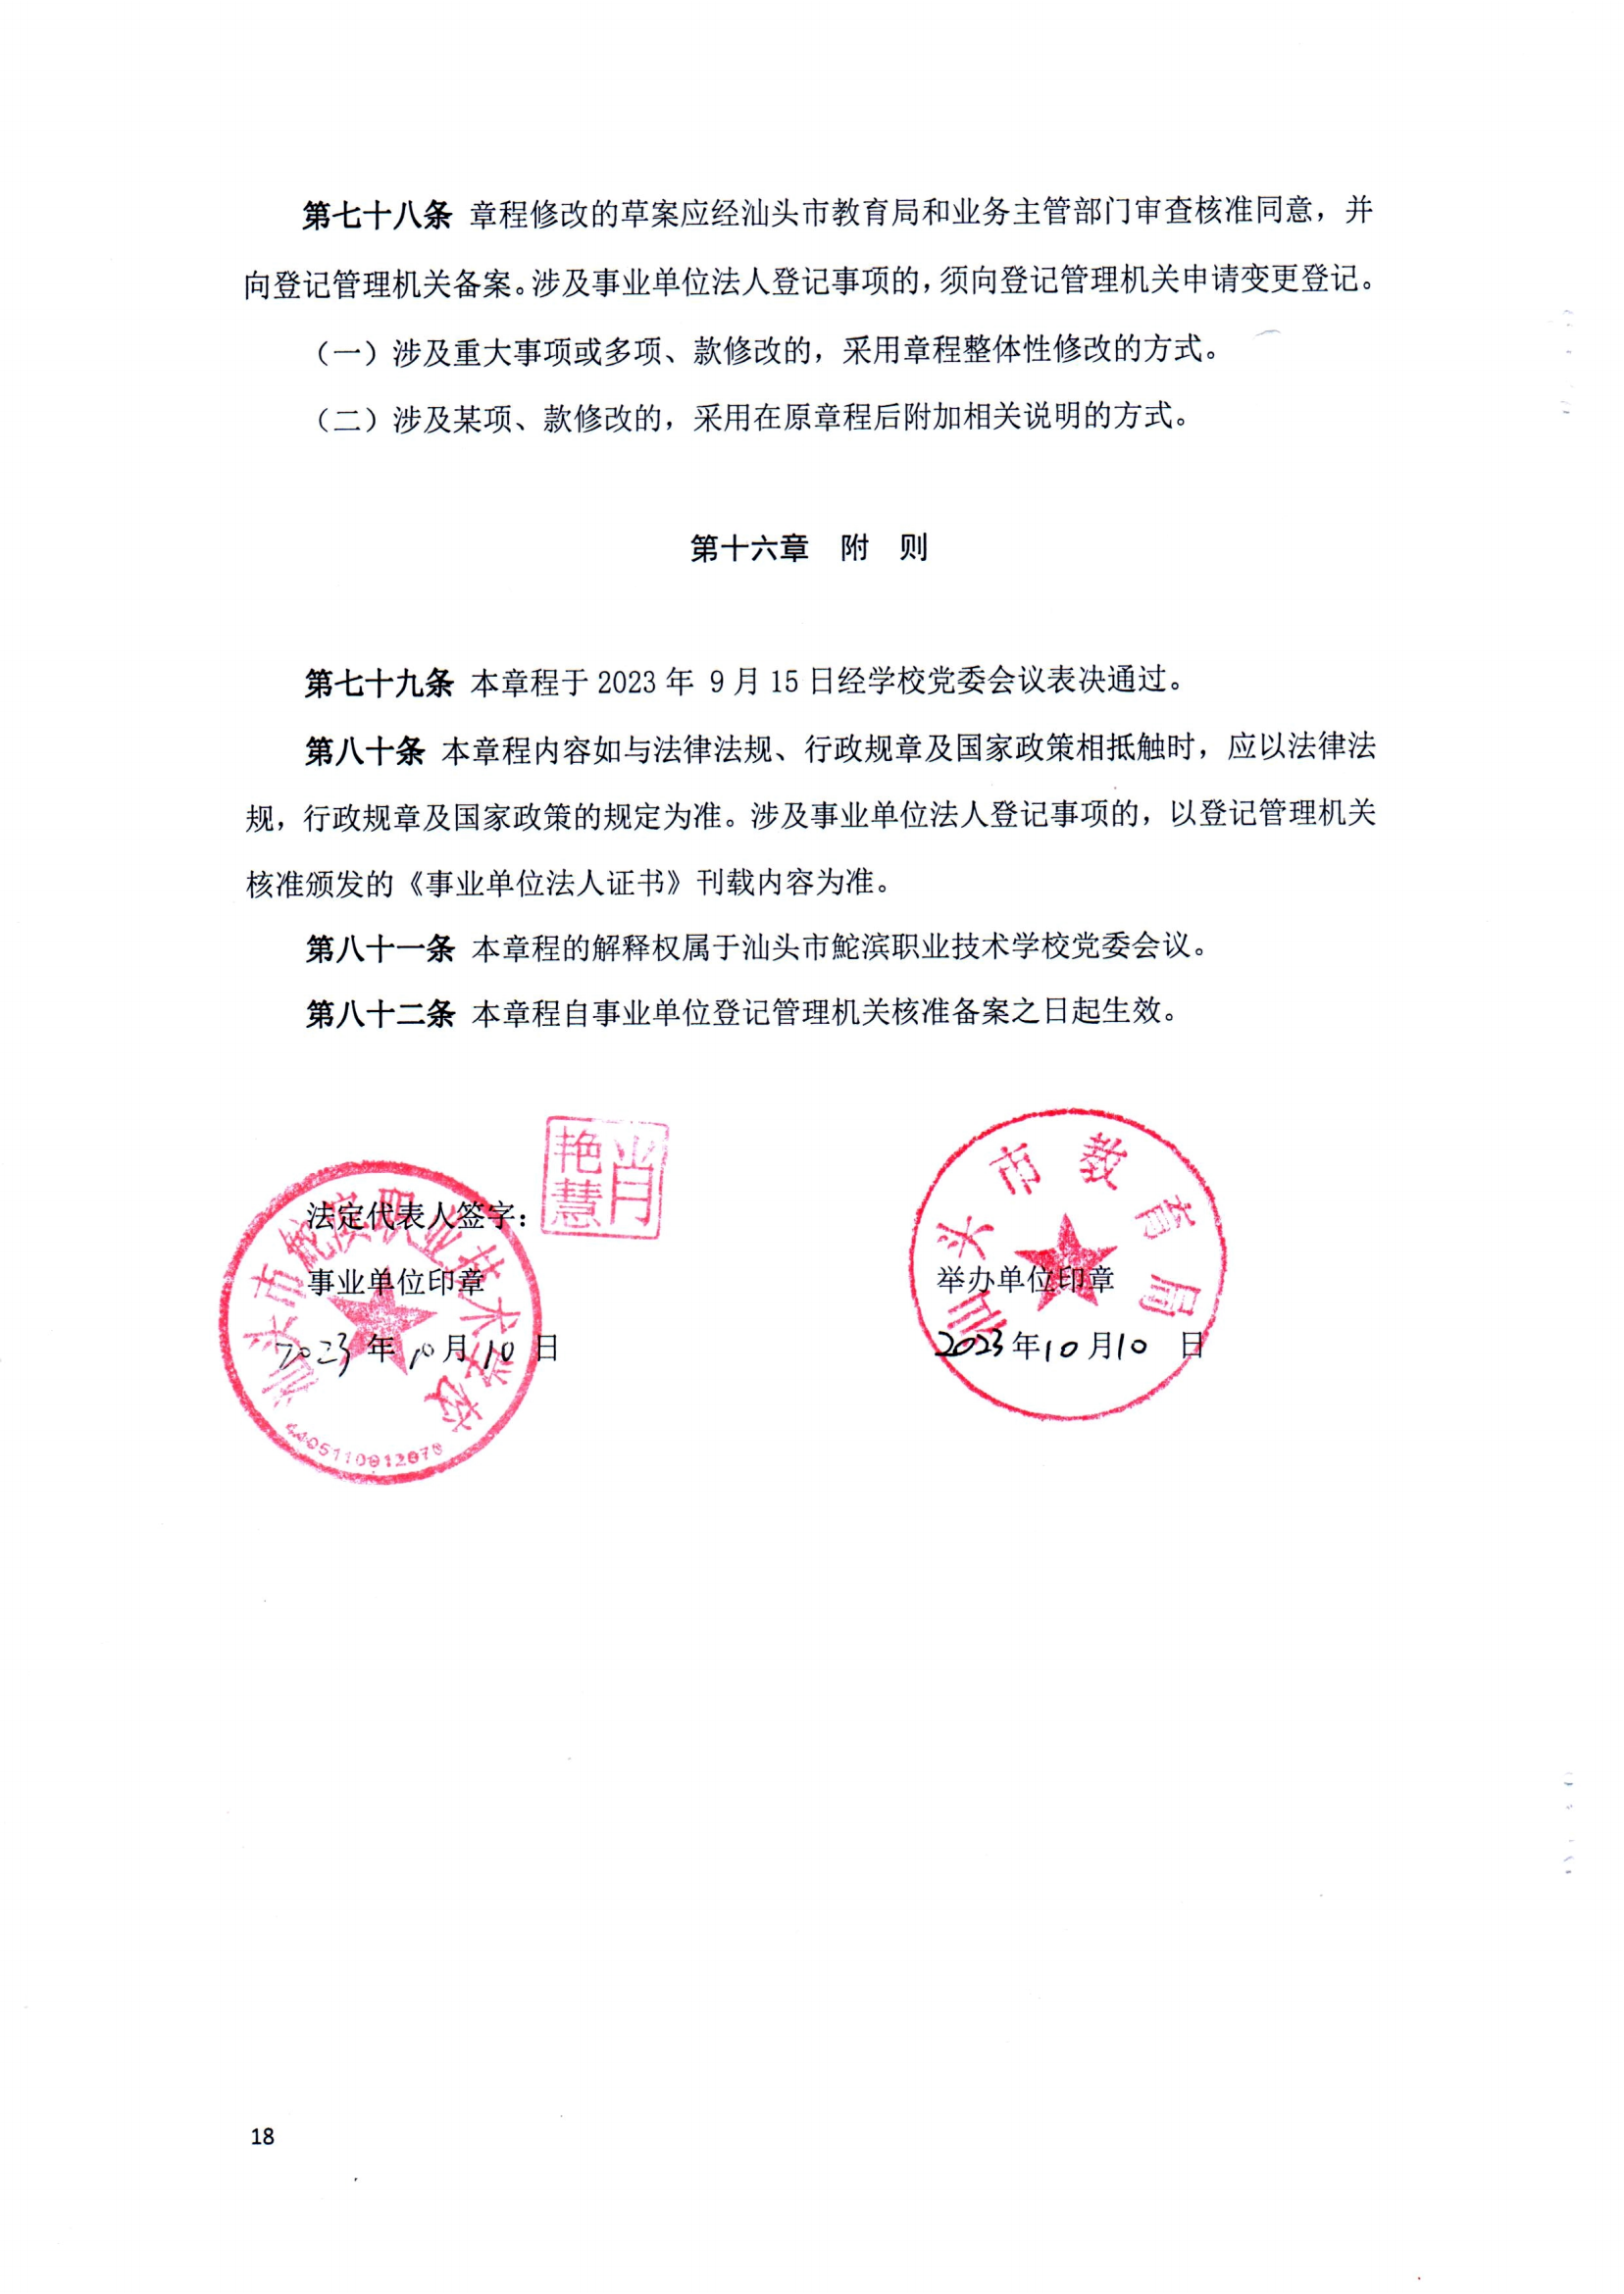 完美体育官方网站（中国）有限公司官网章程（修正案）_17.png